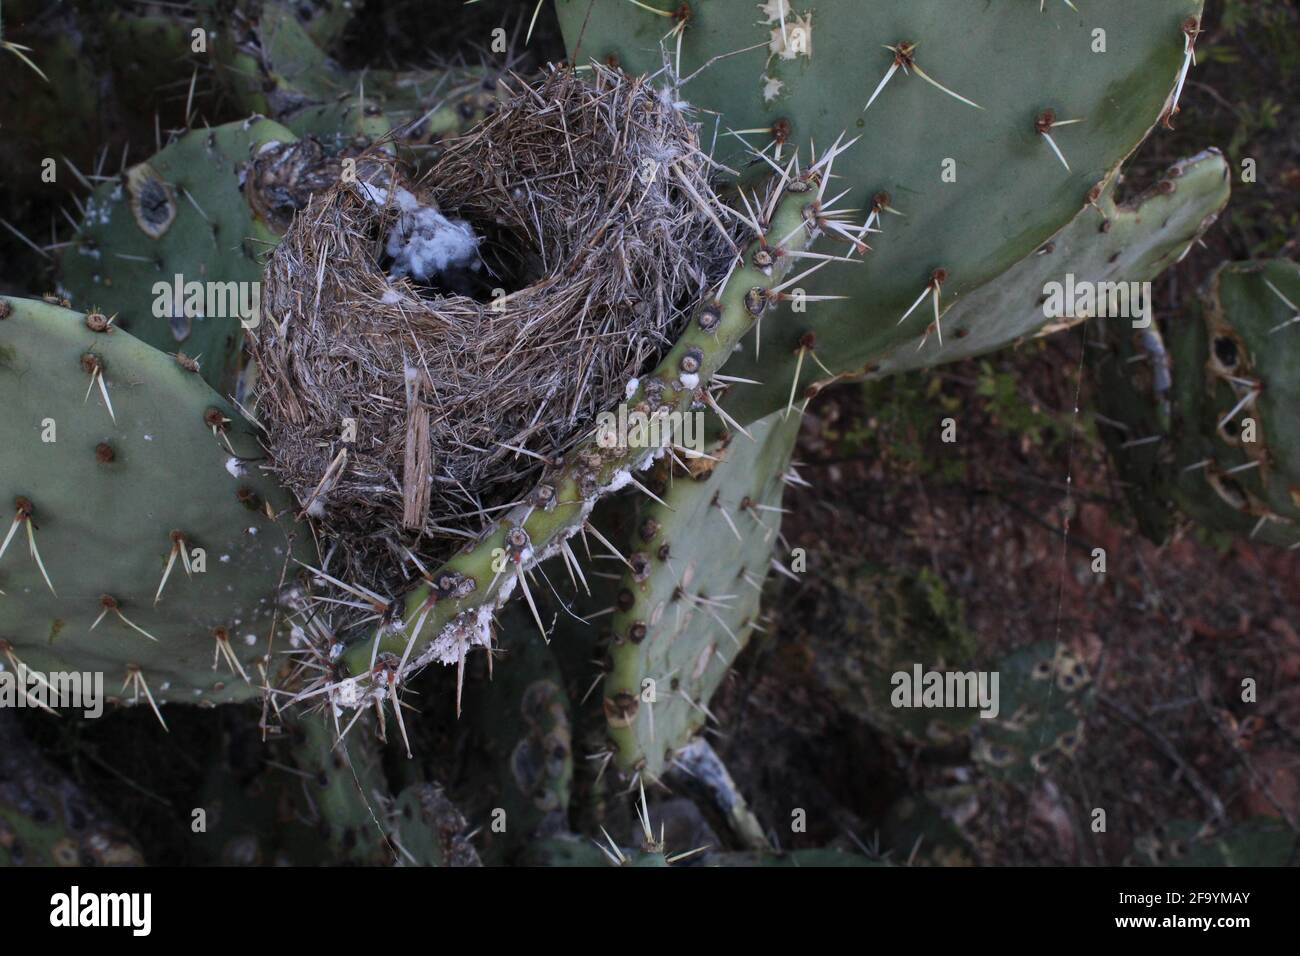 A bird's nest hidden in a Prickly Pear cactus Stock Photo